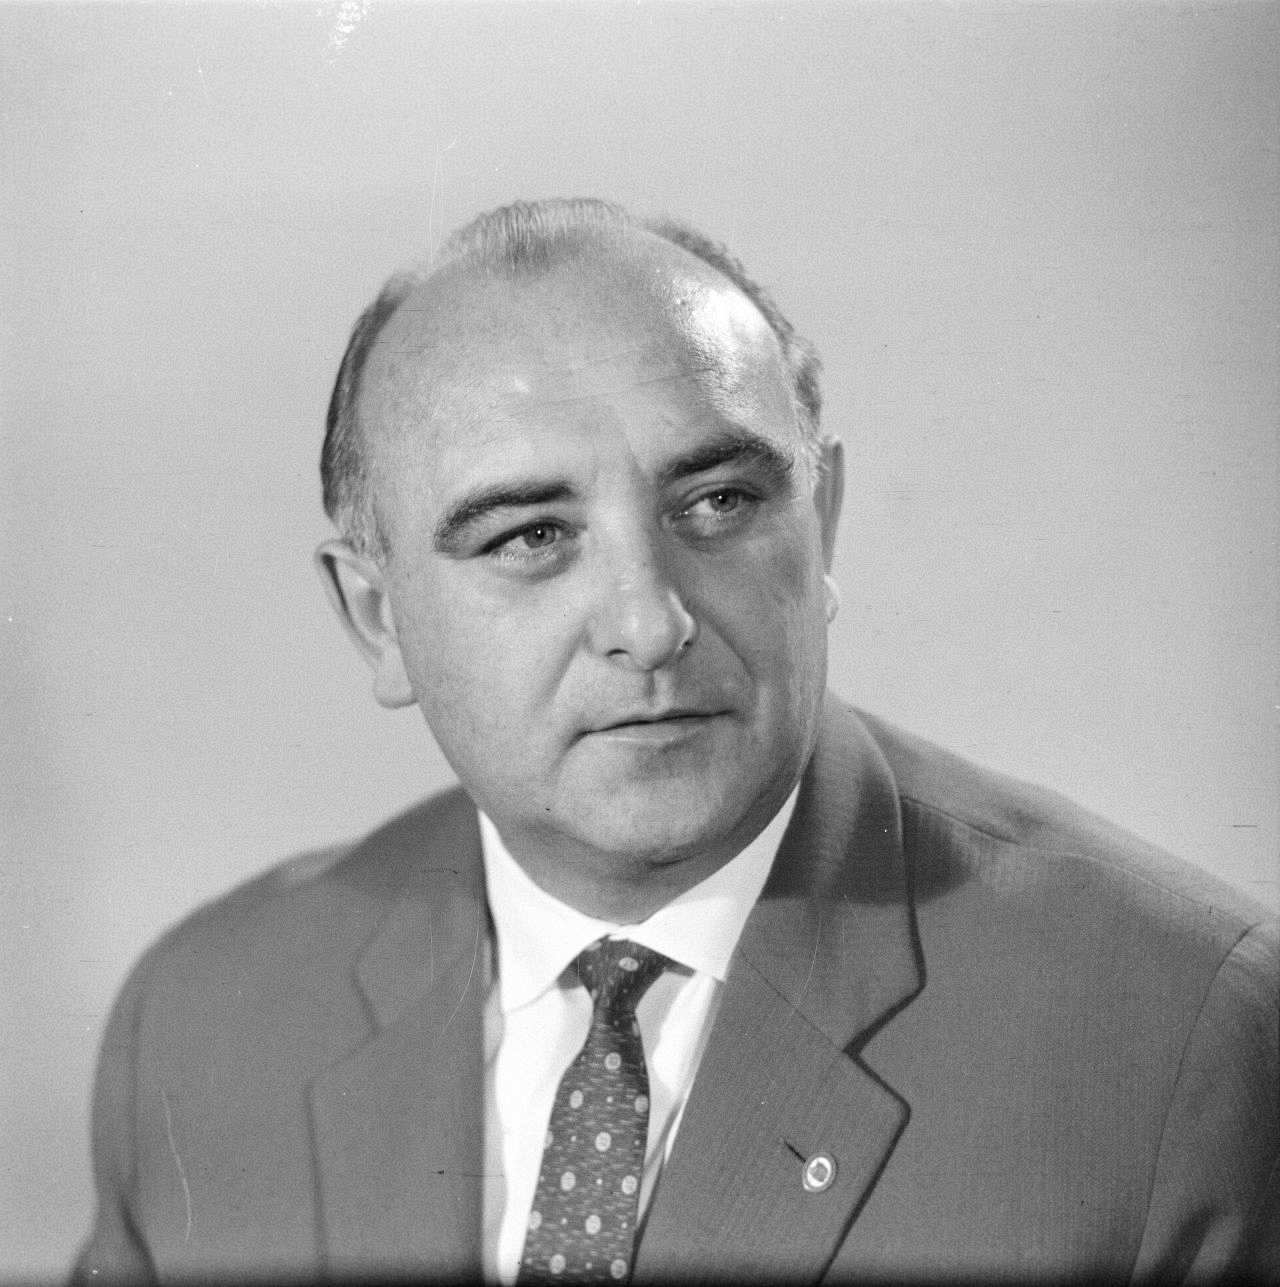 Porträtfoto des DDR-Politikers Erich Apel, 1963.